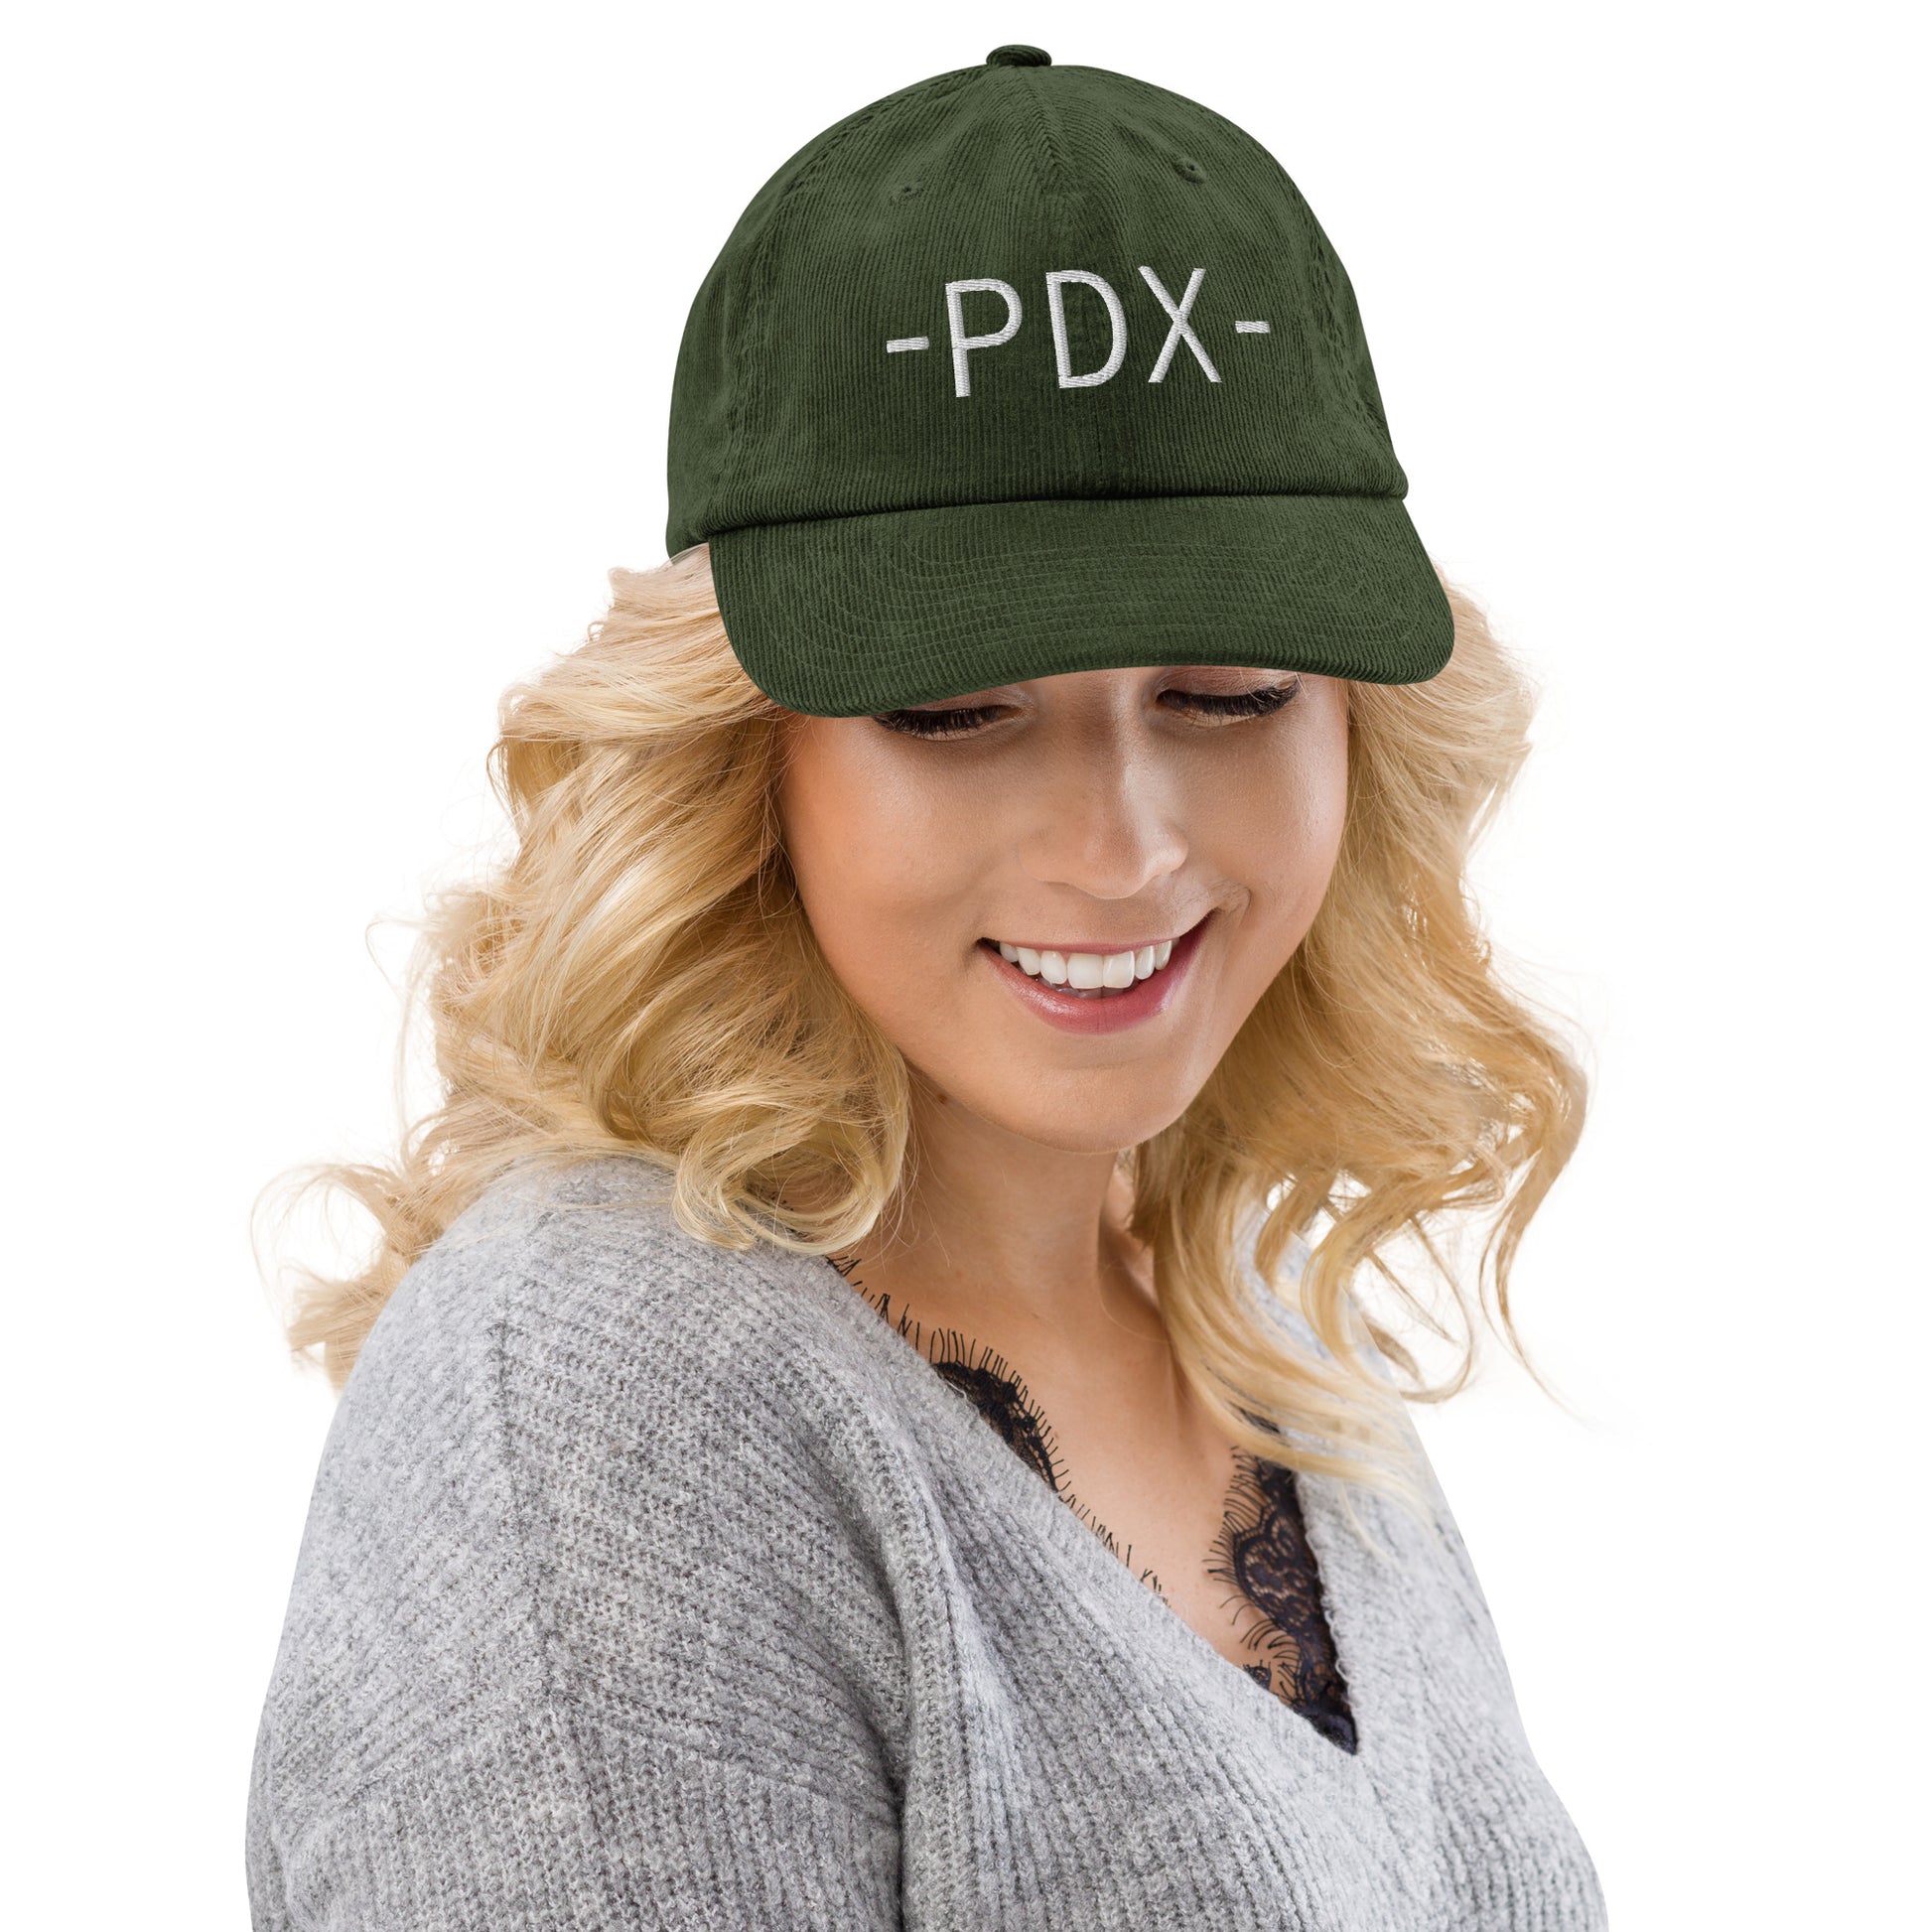 Souvenir Corduroy Hat - White • PDX Portland • YHM Designs - Image 08